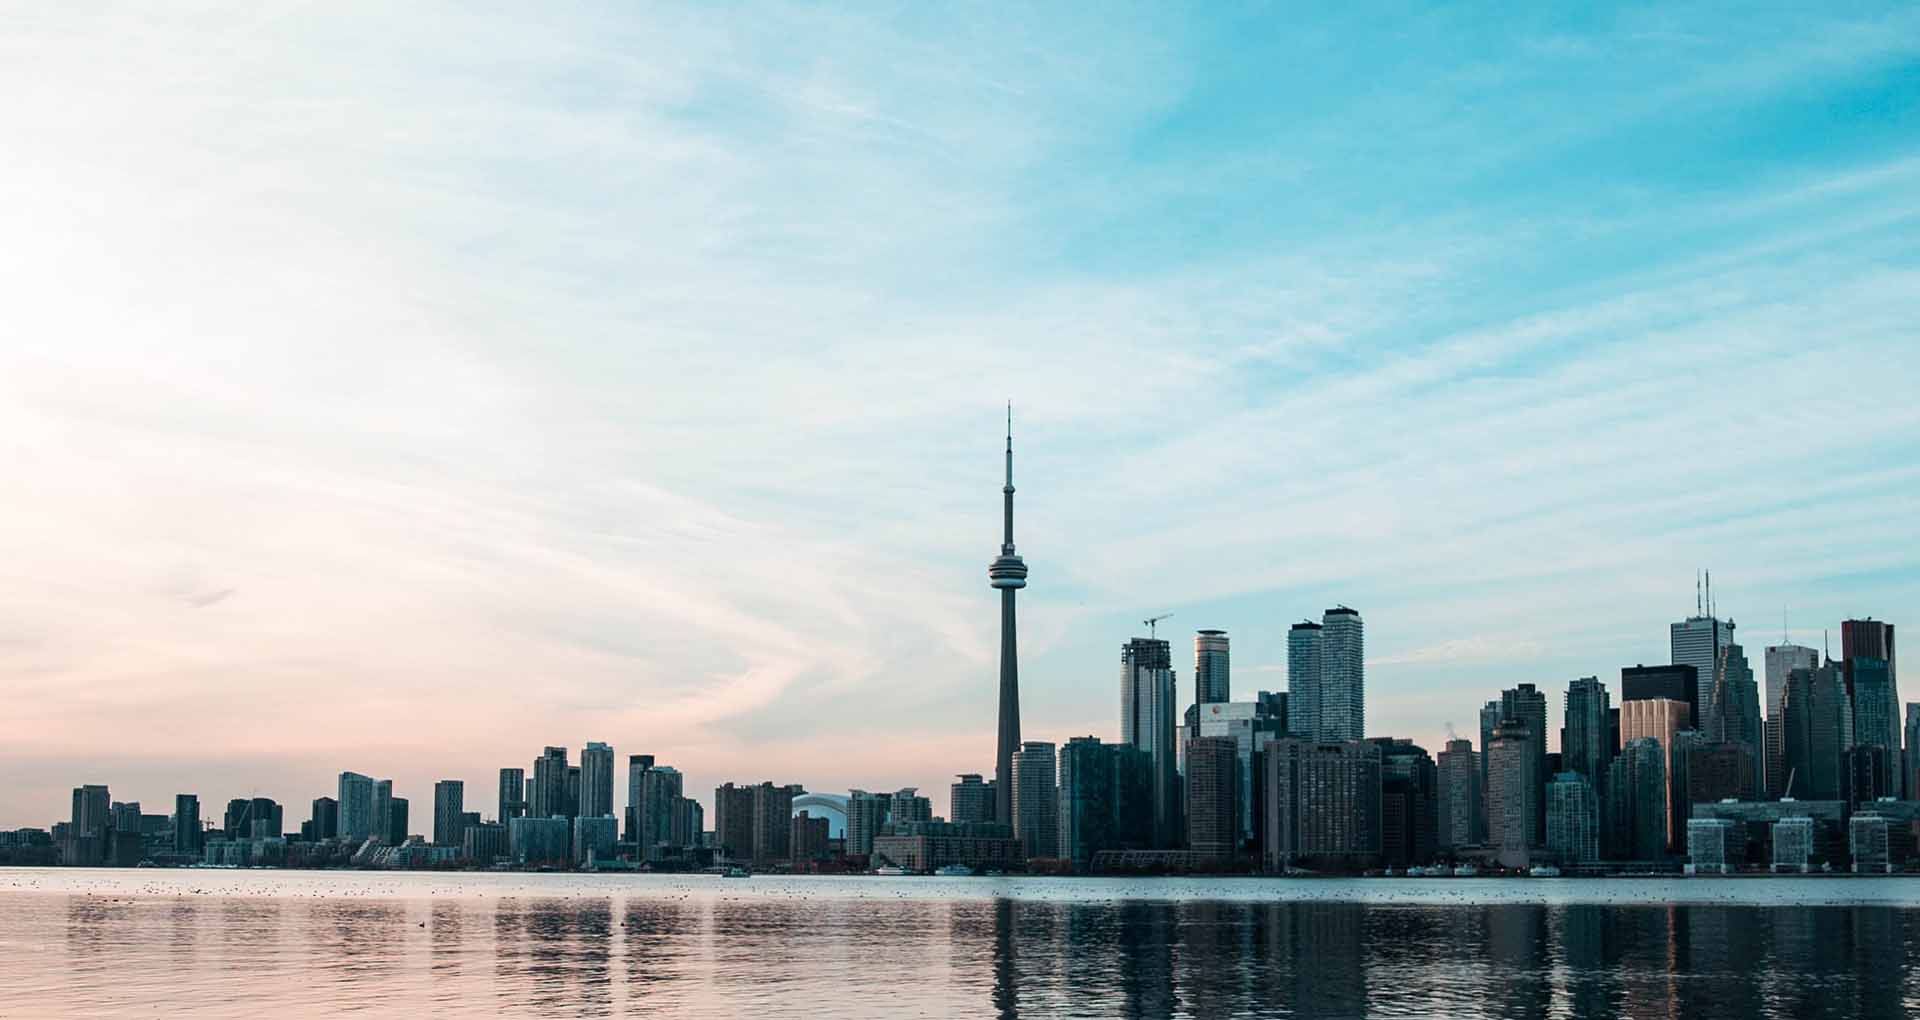 The skyline over Toronto